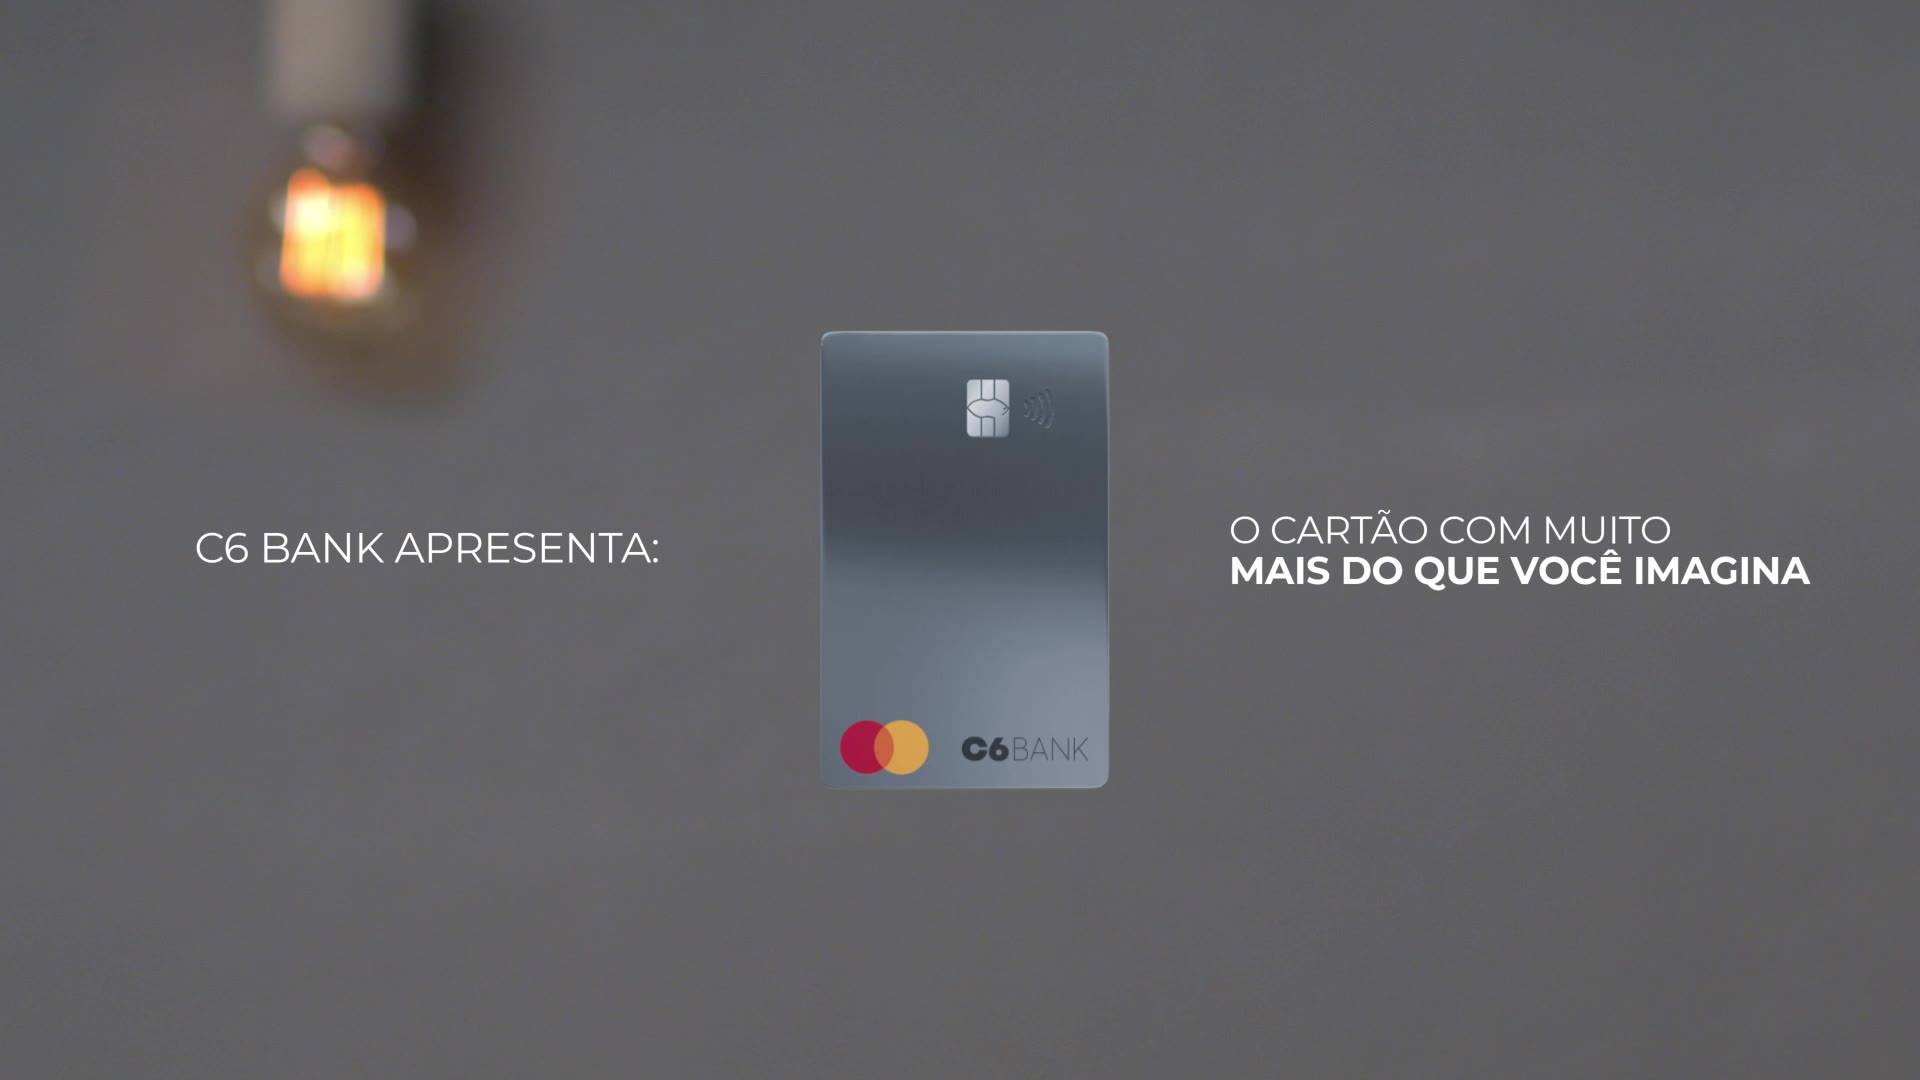 Mas afinal, o que é o cartão C6 Bank? Fonte: C6 Bank.